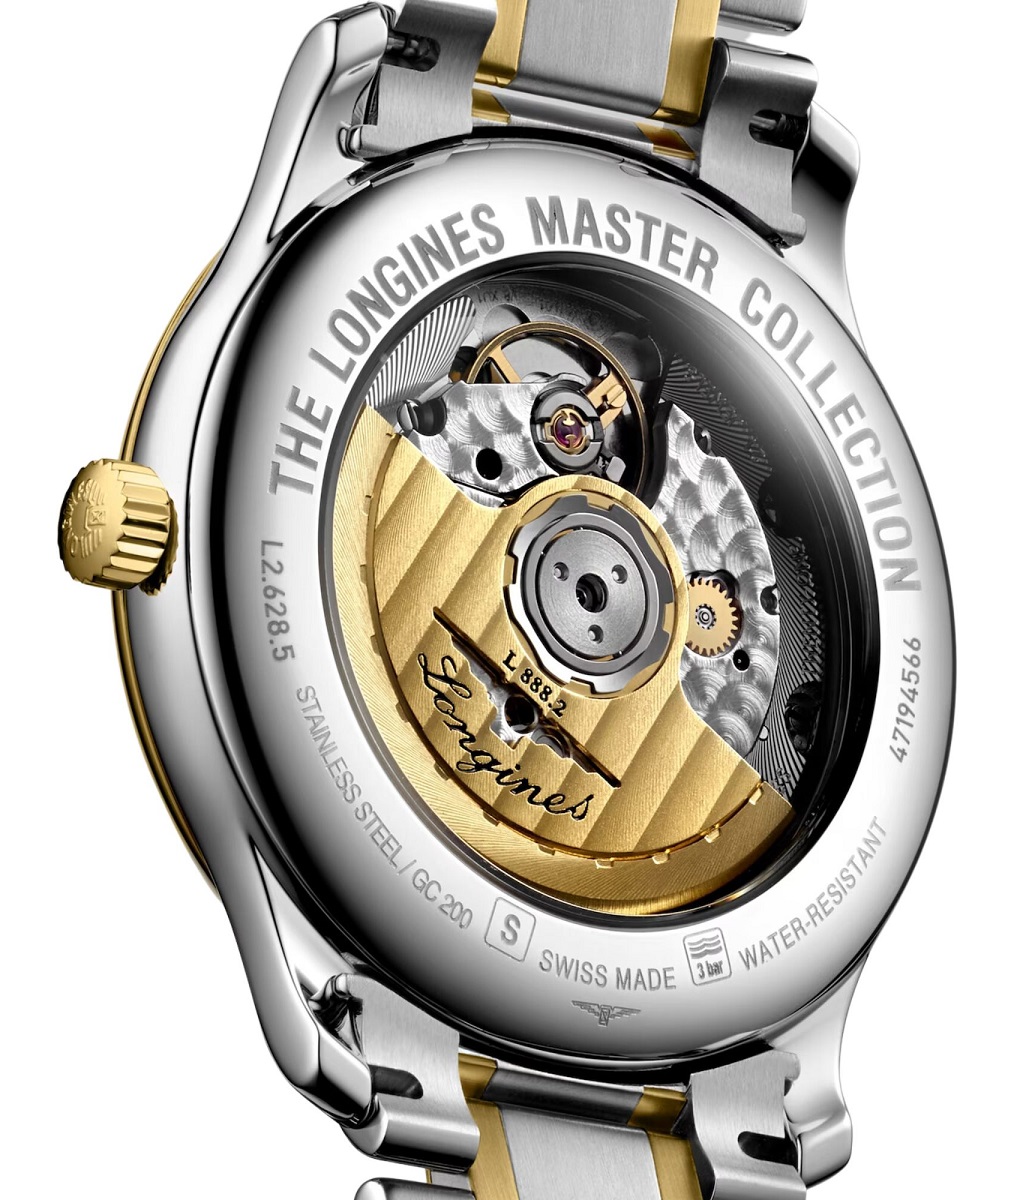 Relógio Longines Master Collection Automático Ouro Amarelo L2.628.5.37.7